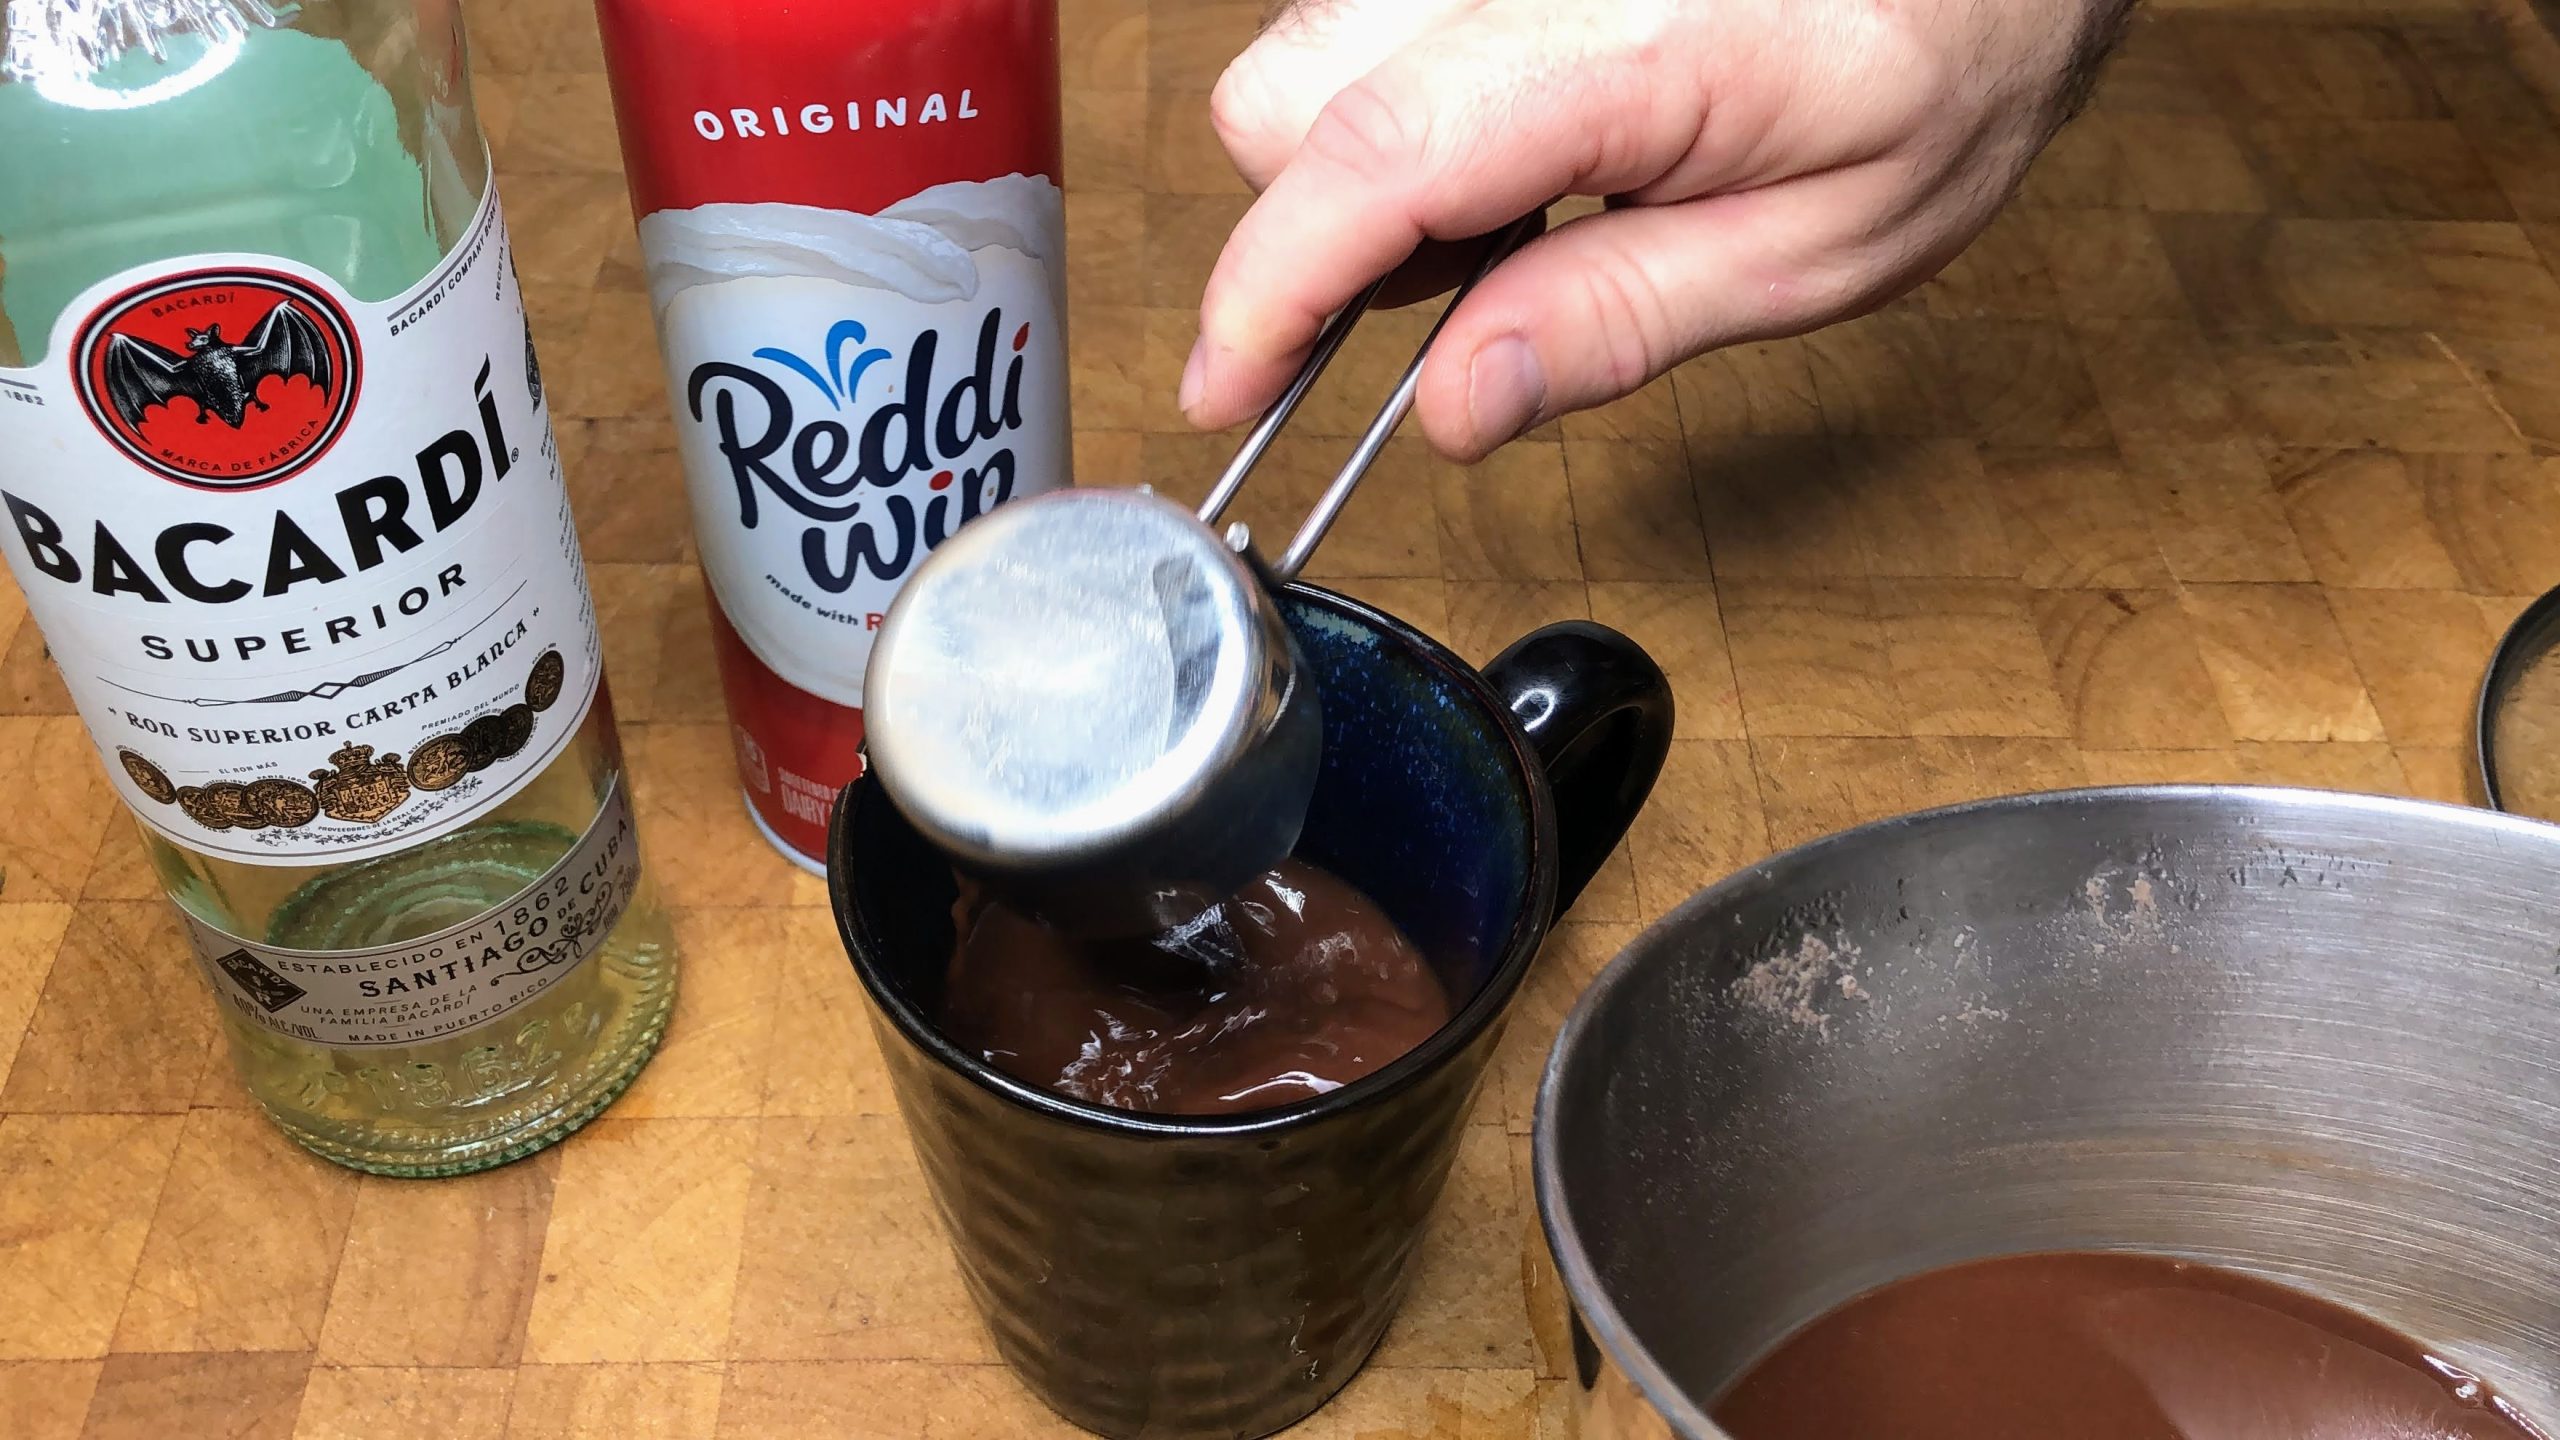 Pouring hot chocolate into a mug.